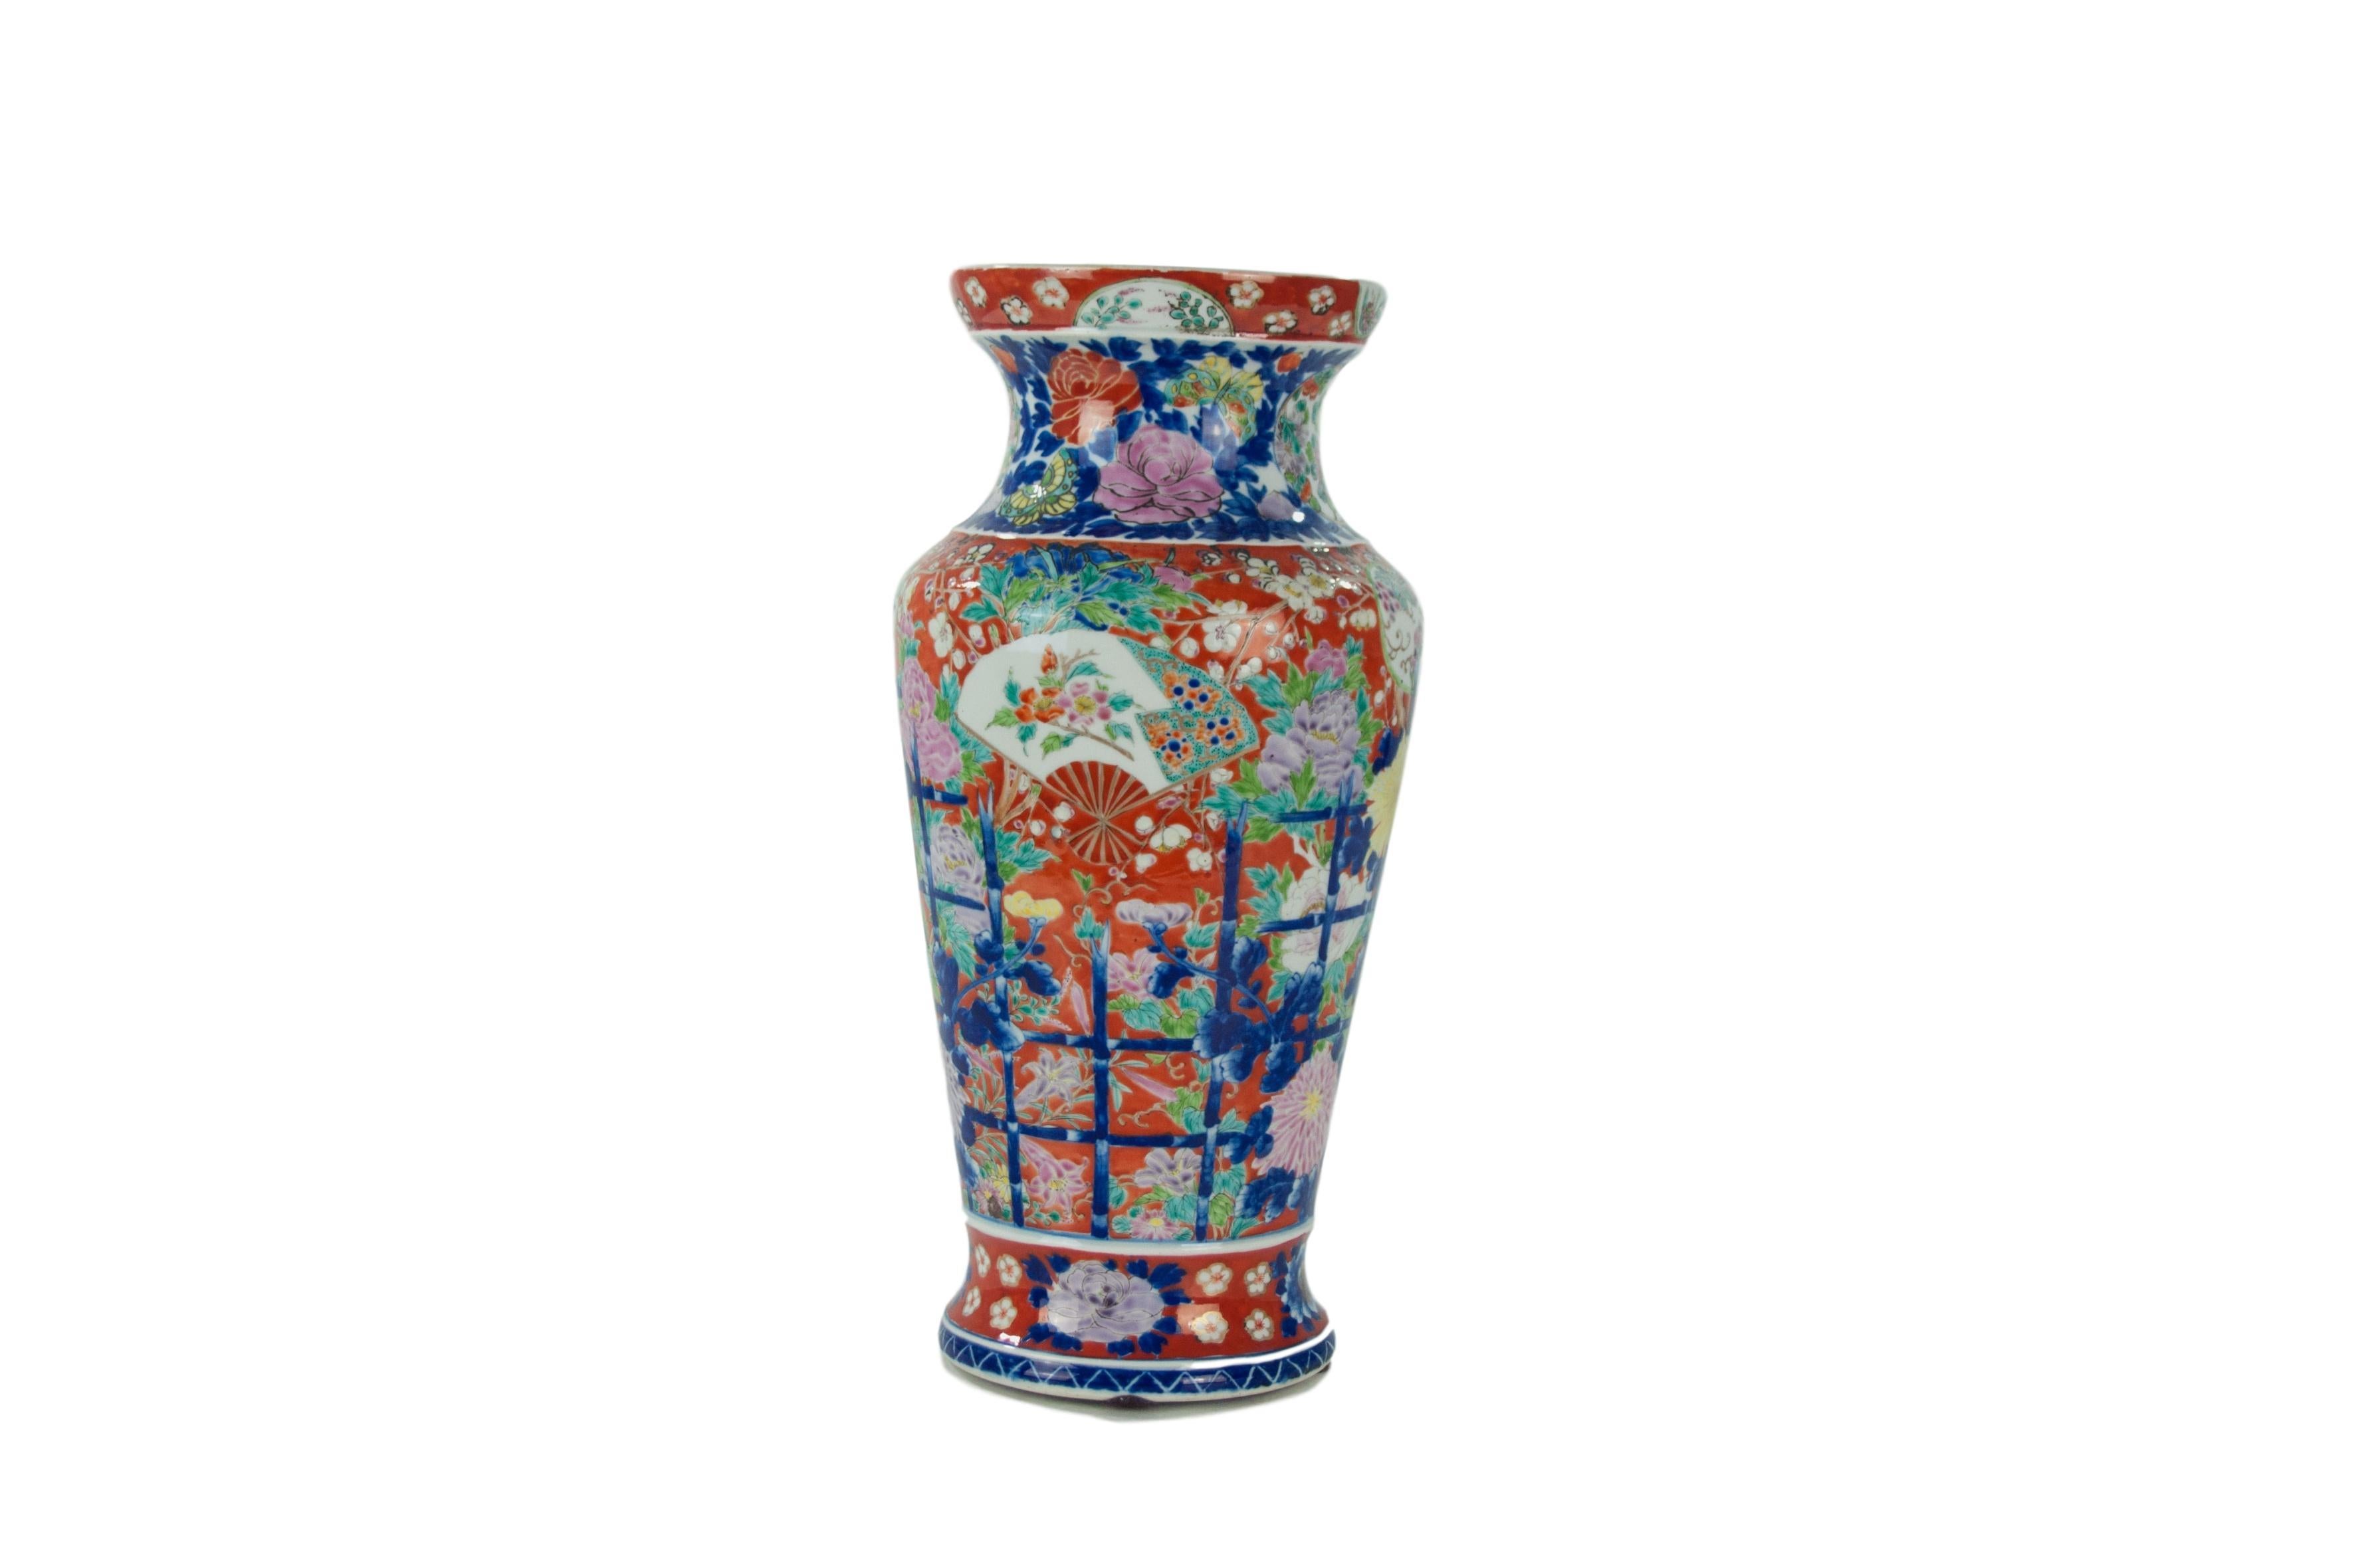 Grand vase de la fin du 19e siècle en porcelaine d'exportation chinoise Imari et Famille Rose peinte à la main.  Coloration extrêmement rare.  